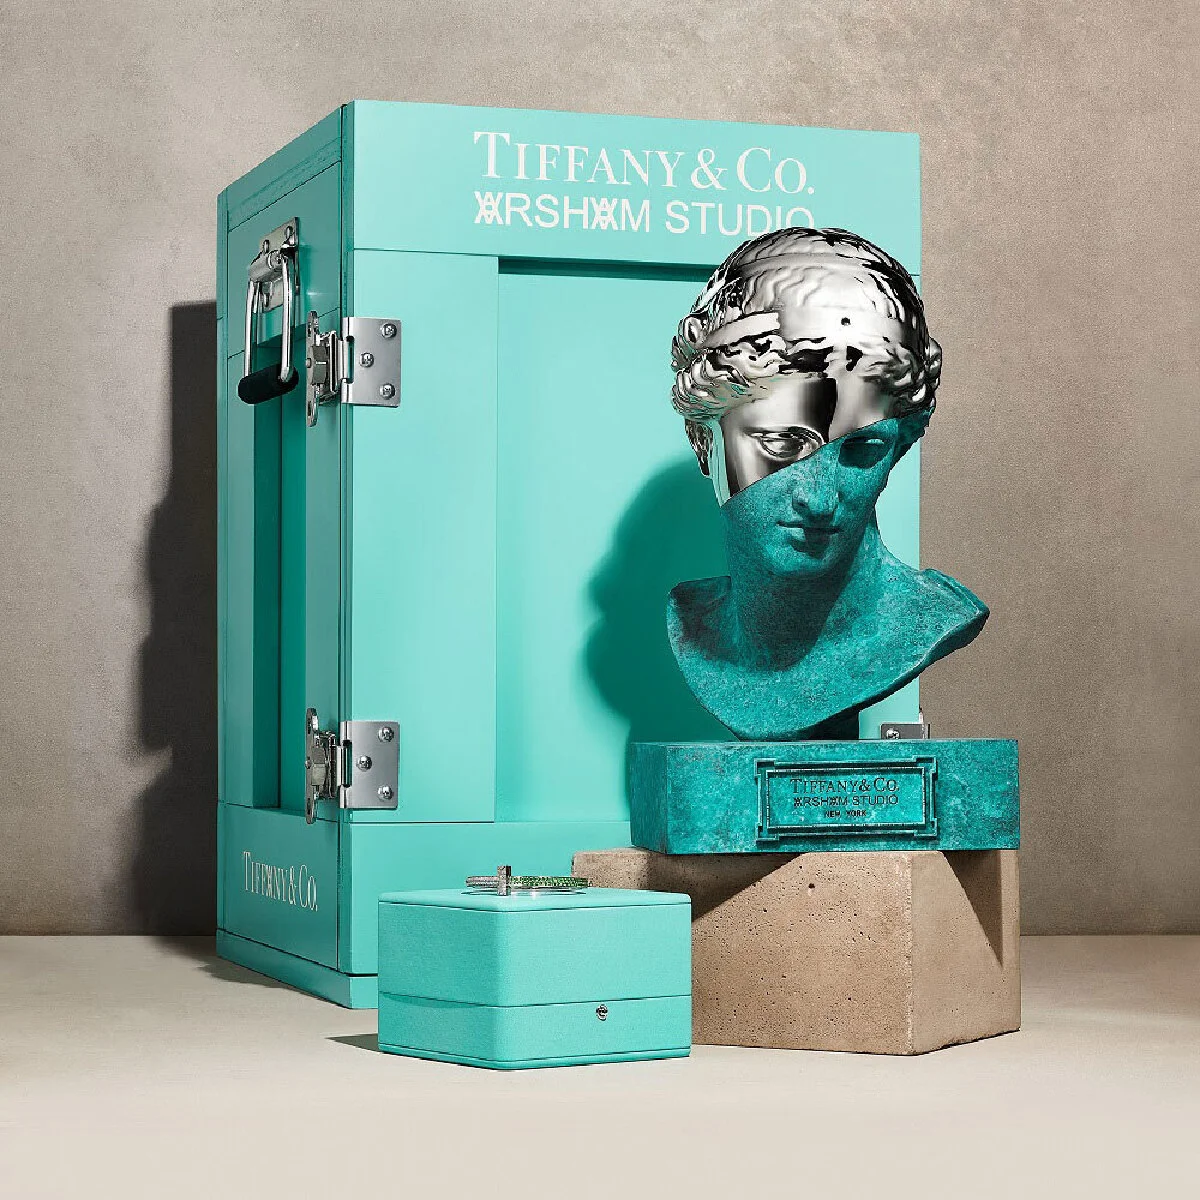 【ティファニー】ダニエル・アーシャムとコラボ！ ヴィーナス像に収められた「ティファニー T ワン ブレスレット」の限定エディションを発表